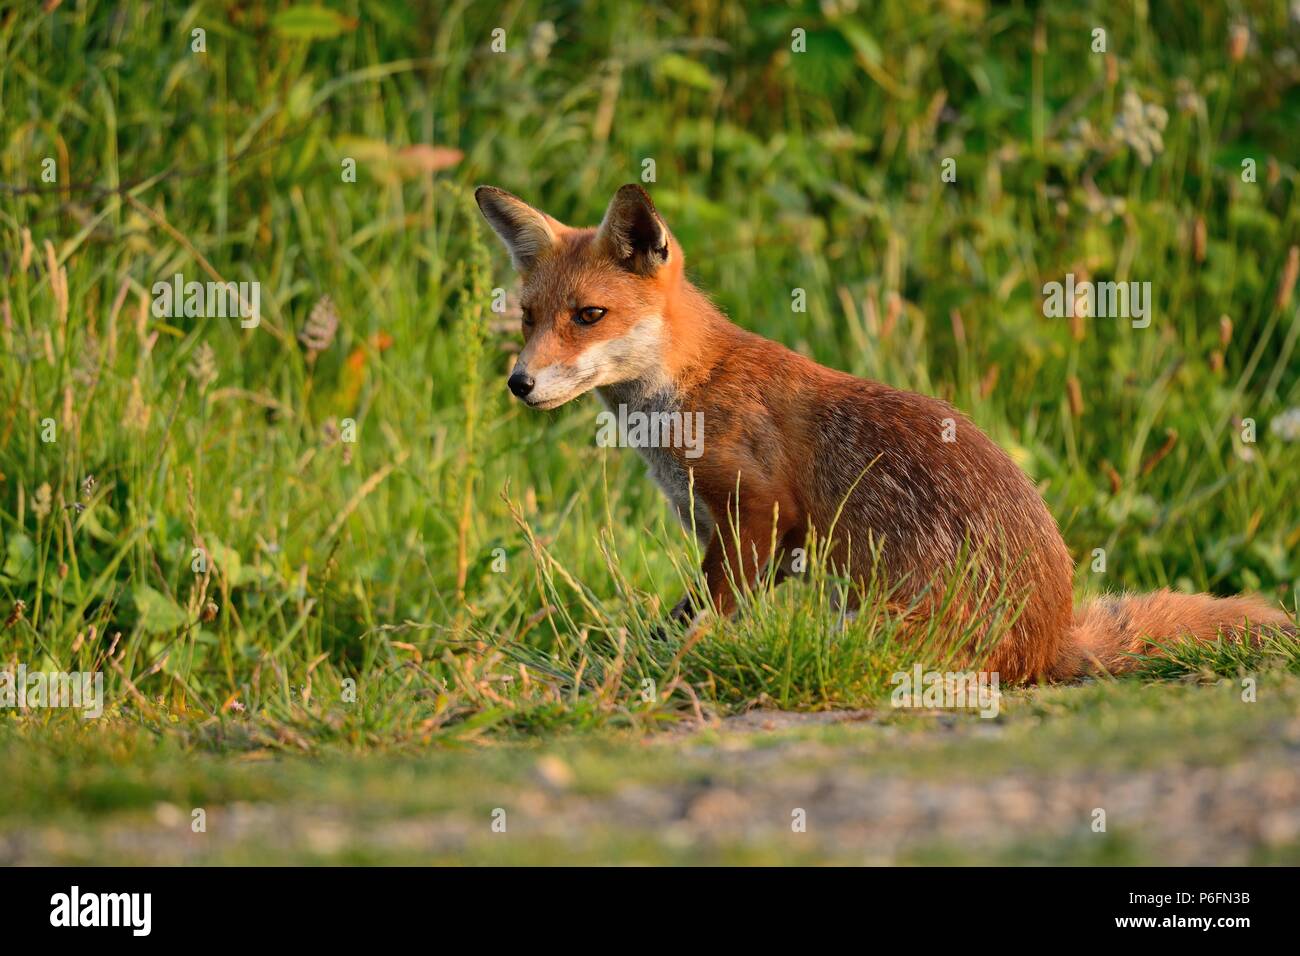 Nahaufnahme, Porträt einer wilden Fuchs sitzend in einer Wiese  Stockfotografie - Alamy